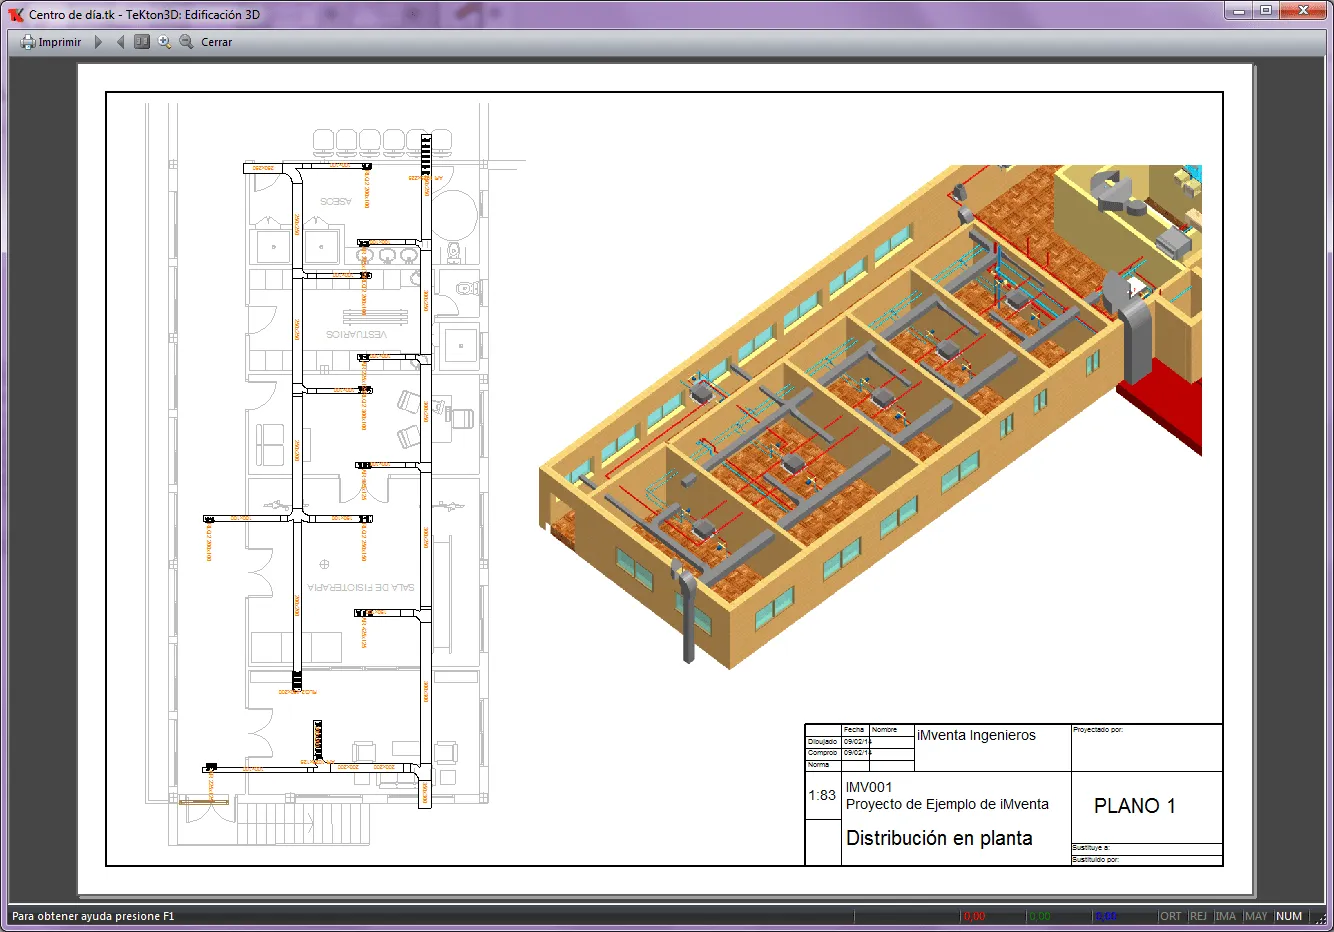 iMventa Ingenieros - Software Técnico para Ingeniería y Arquitectura -  Definir cajetines personalizados para TeKton3D